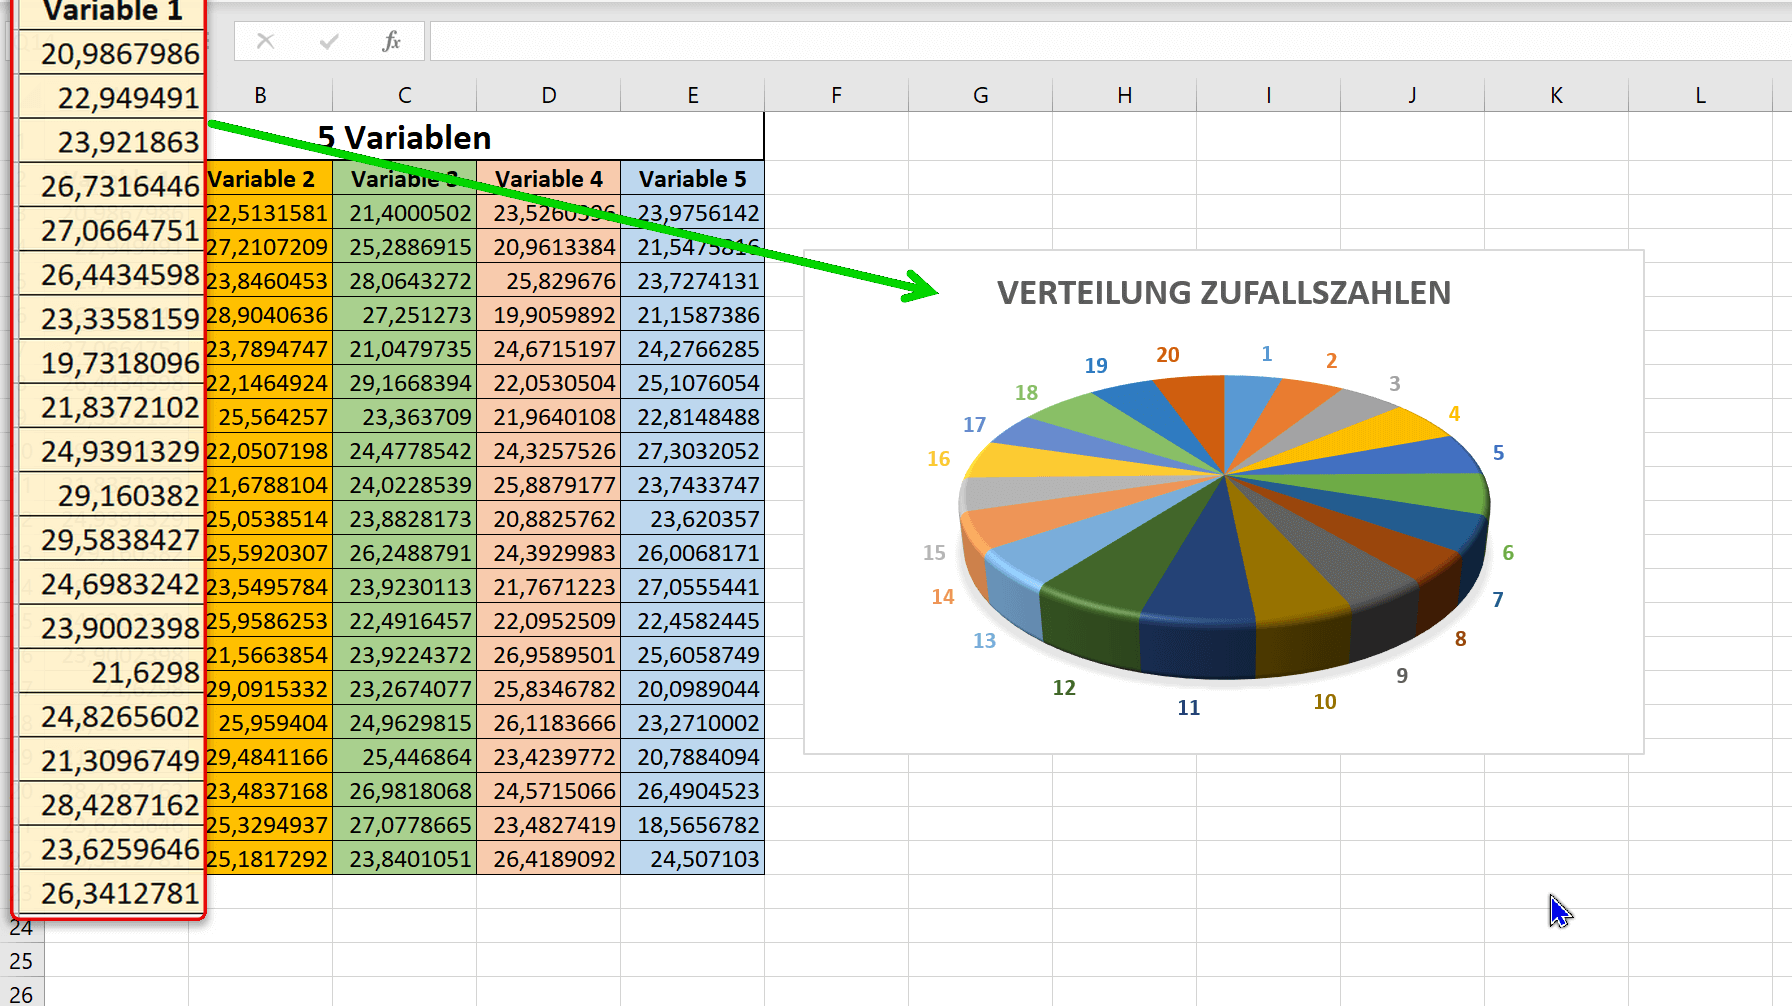 Zufallszahlen in Excel mit Datenanalyse Abb.3